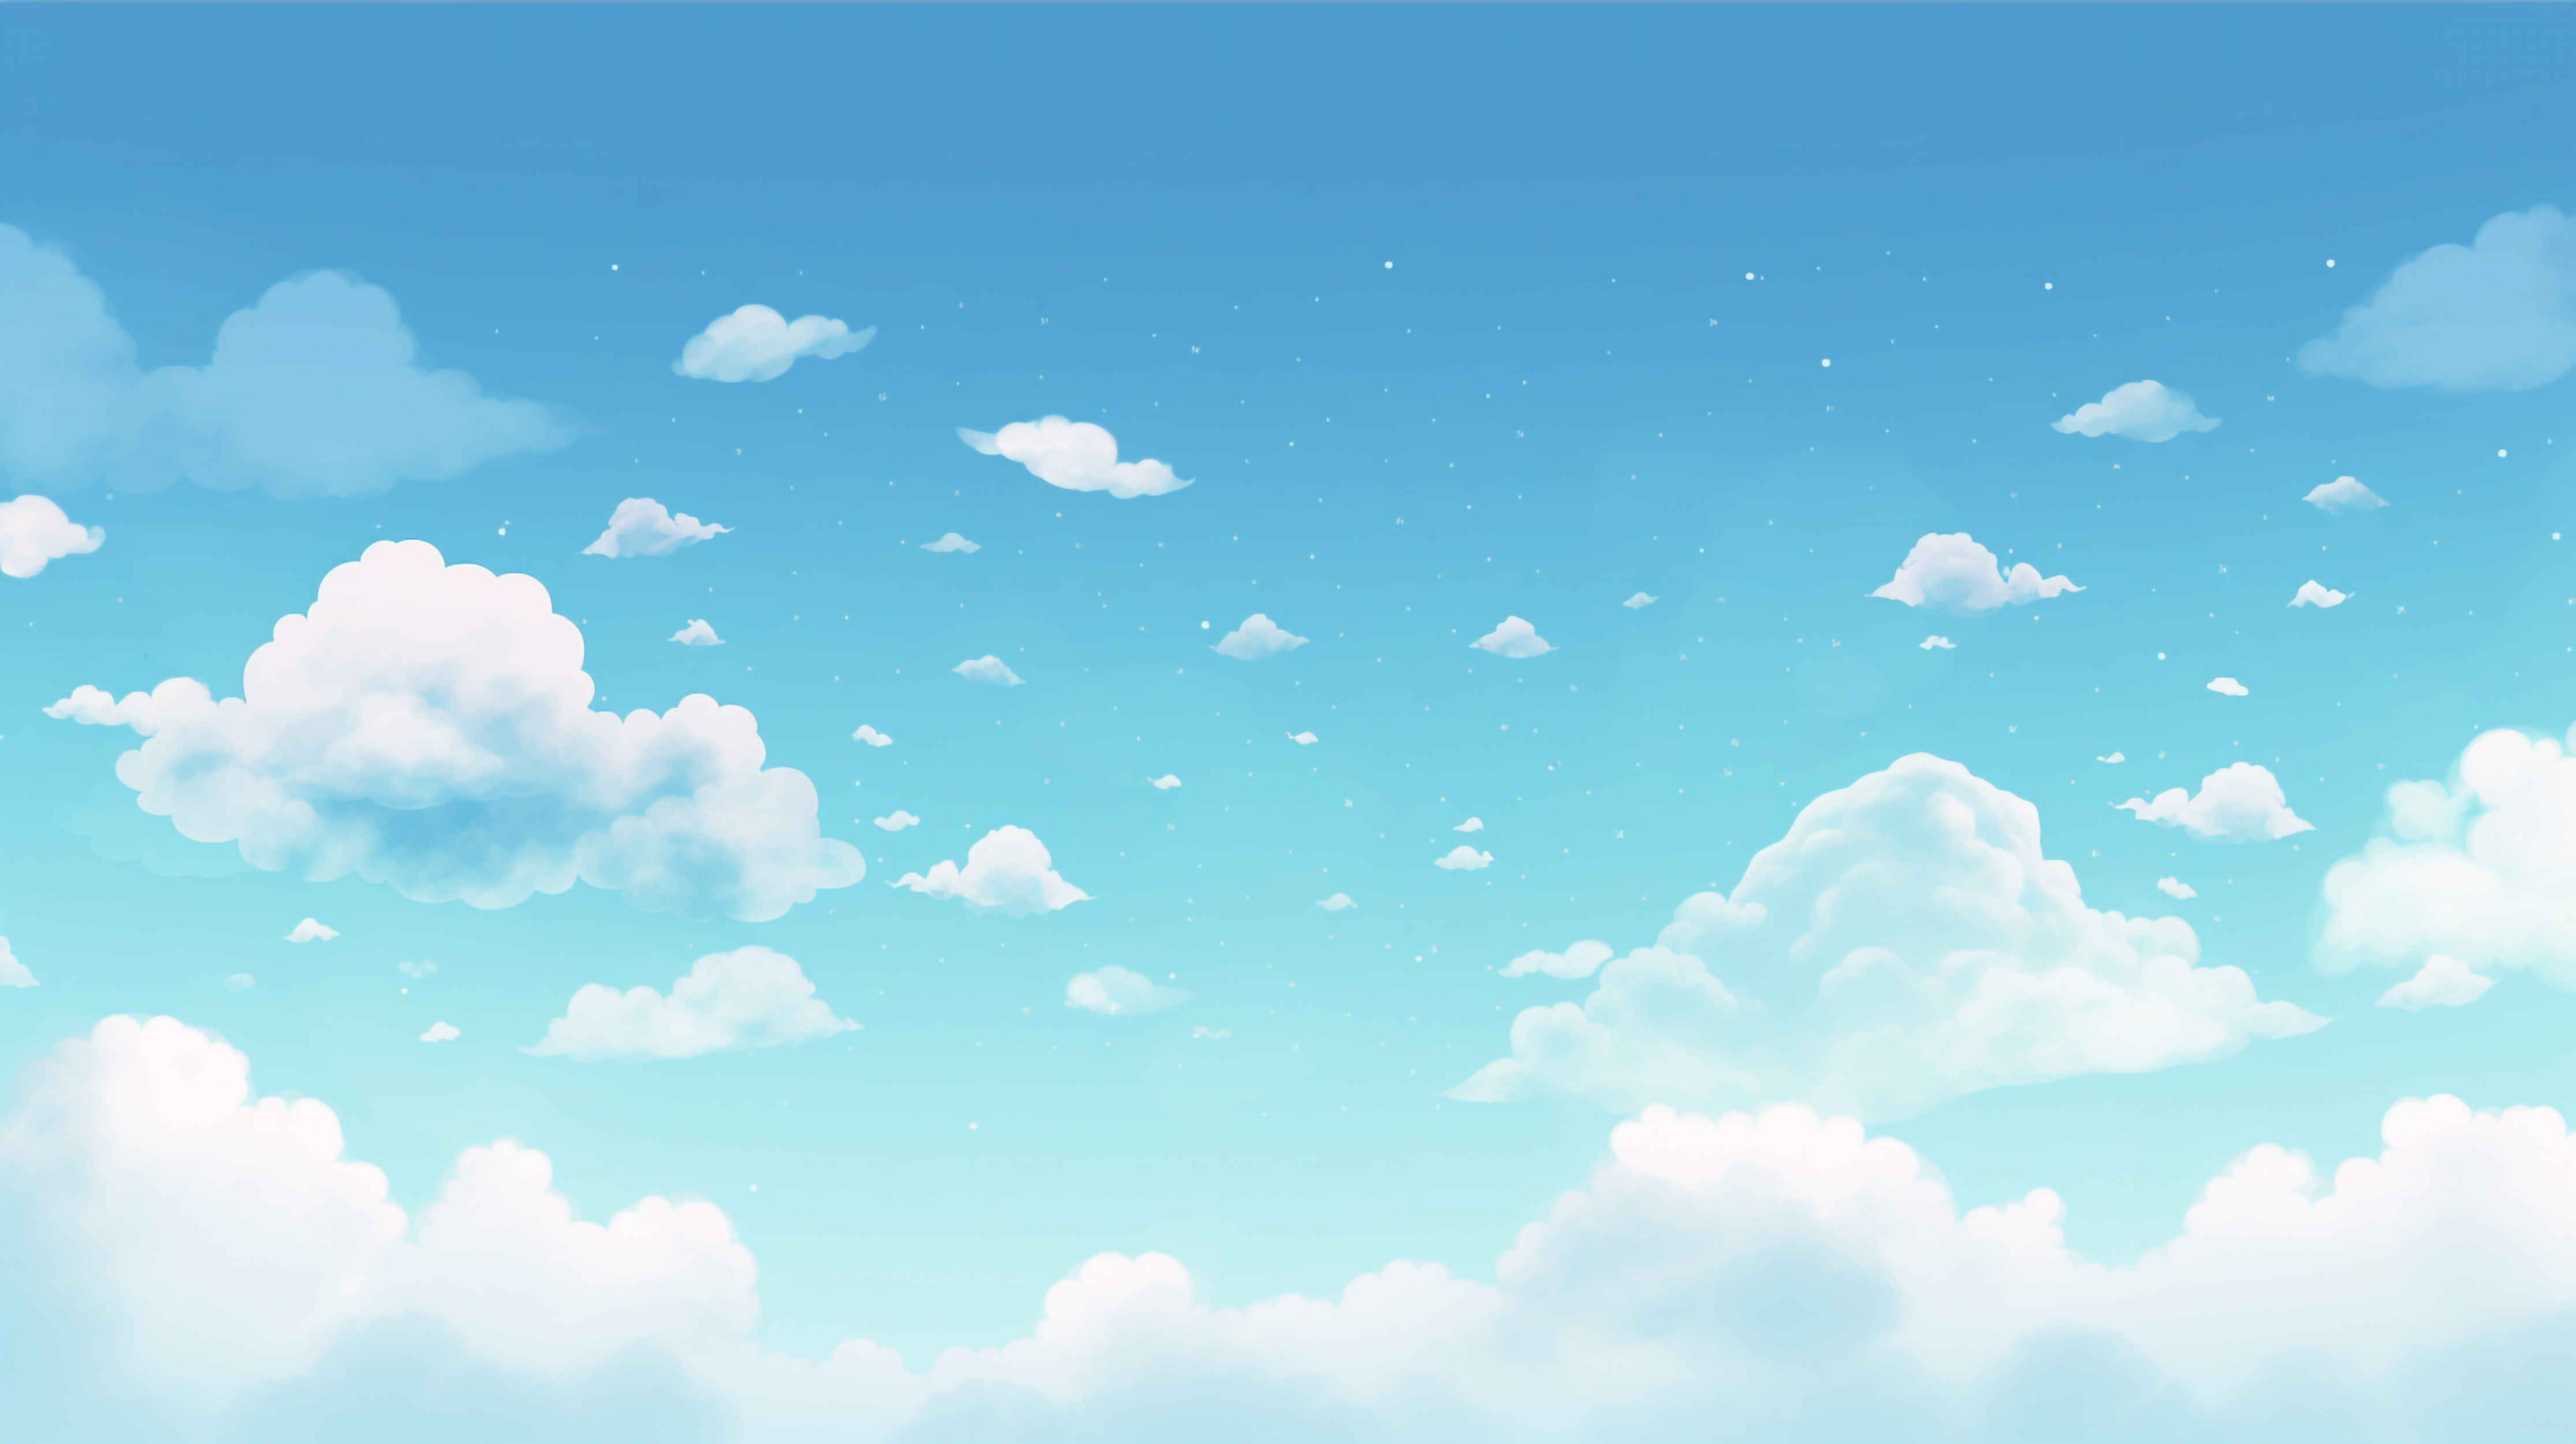 白云晴天漂泊的云朵创意天空背景插画简单背景图片